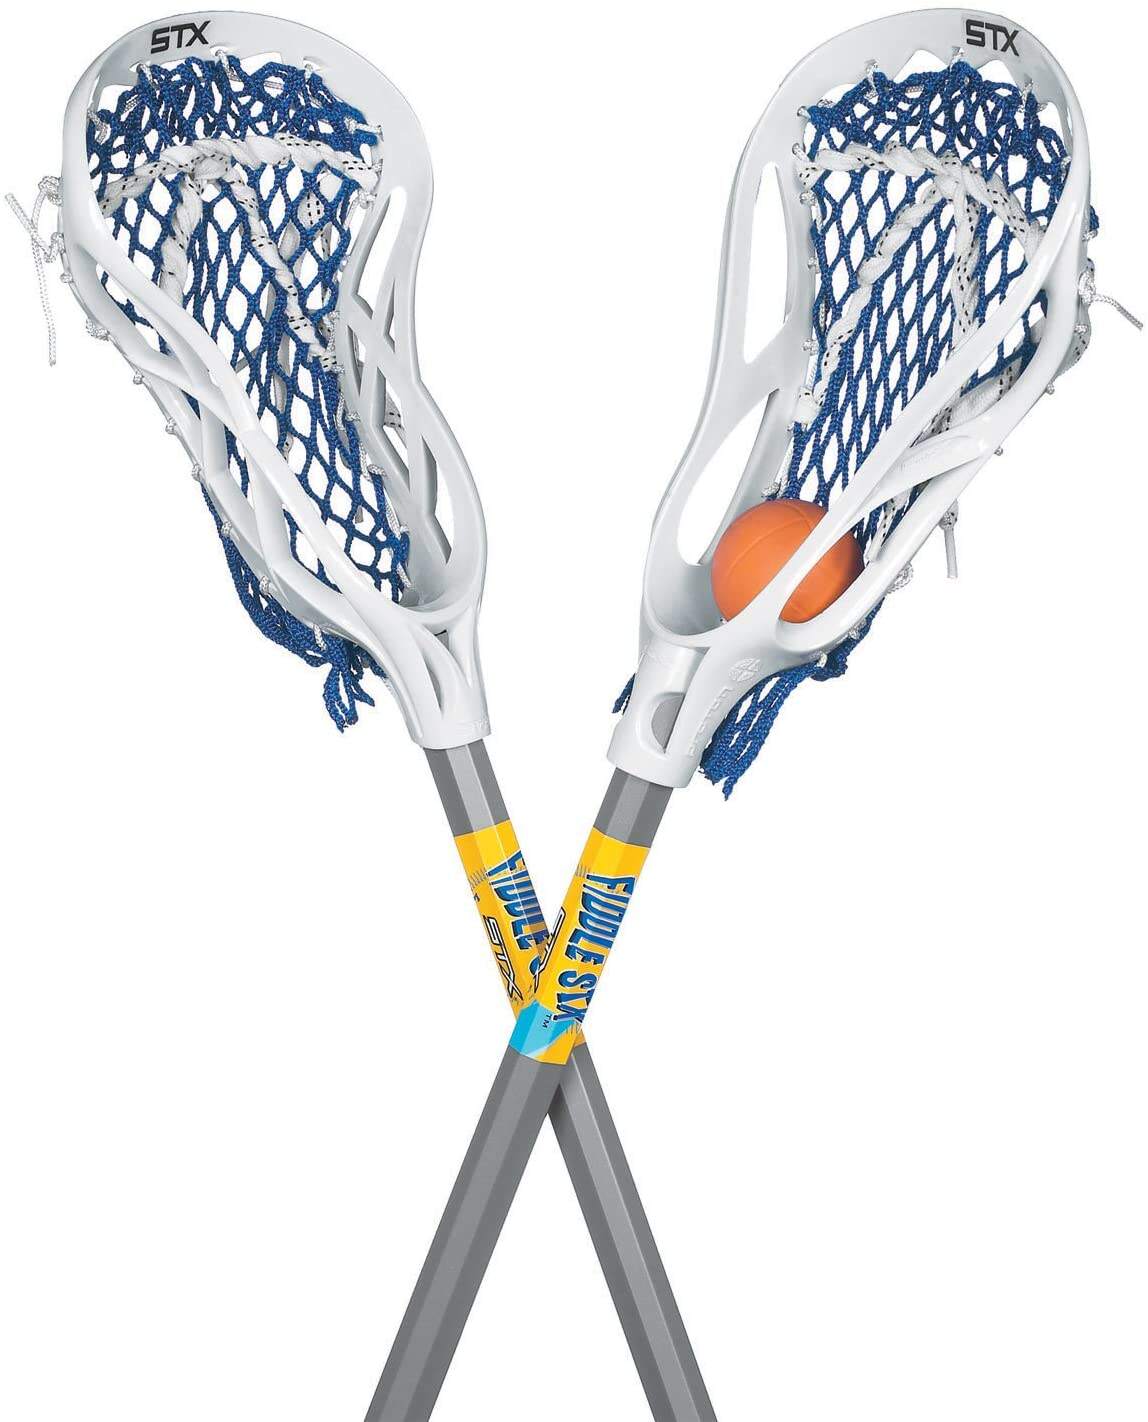 Benutzerdefiniertes Logo Lacrosse Sportausrüstung Aluminium Kunststoff Kohlefaser Benutzerdefinierte Ihr Logo Lacrosse Sticks Fabrik